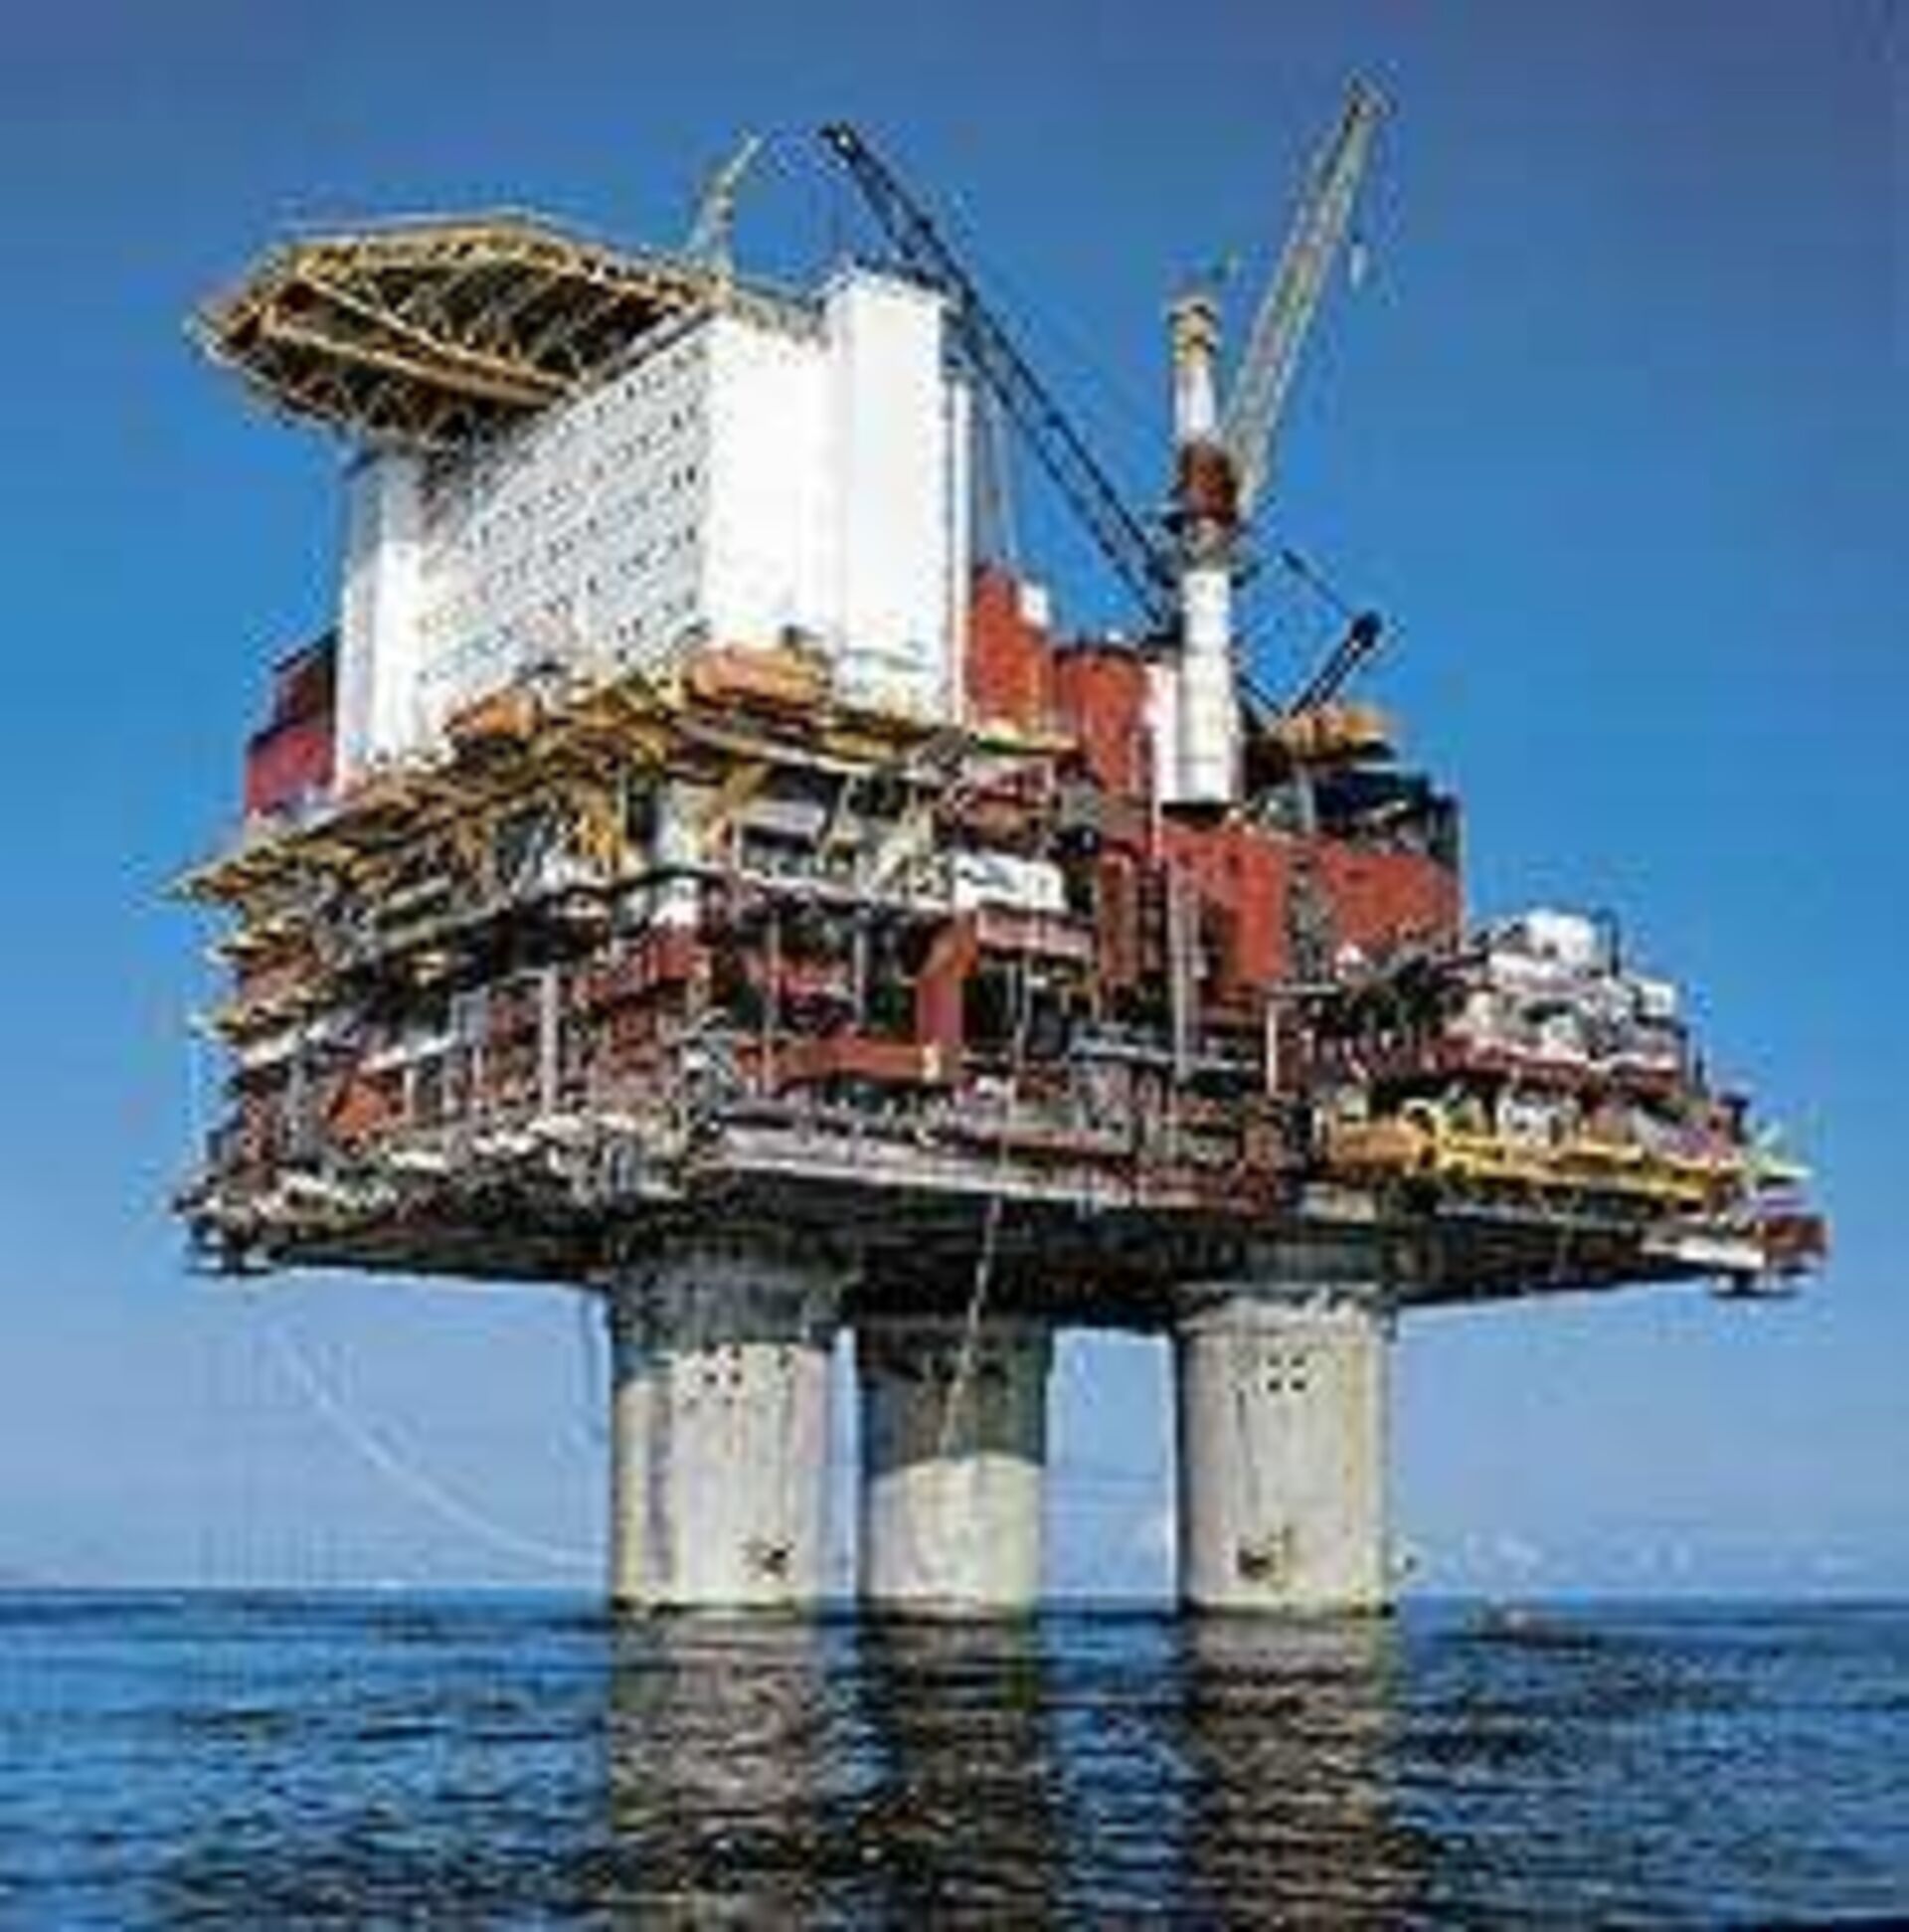 Морская буровая платформа. Нефтедобывающая морская платформа Хайберния. Нефтяная платформа "Дропнер" 1995. Нефтяная платформа Draugen. Statfjord.